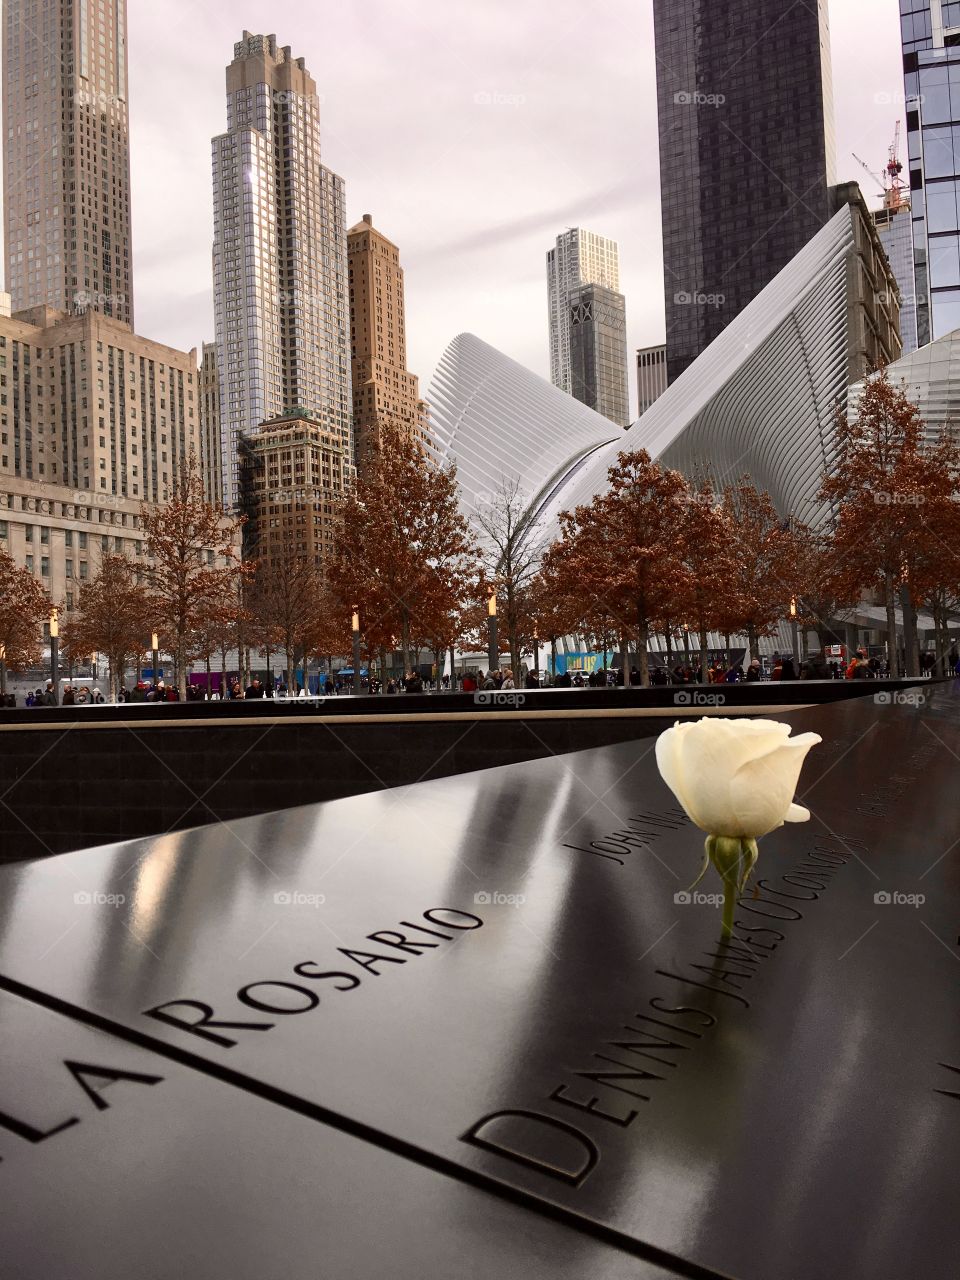 9/11 memorial in New York, New York 